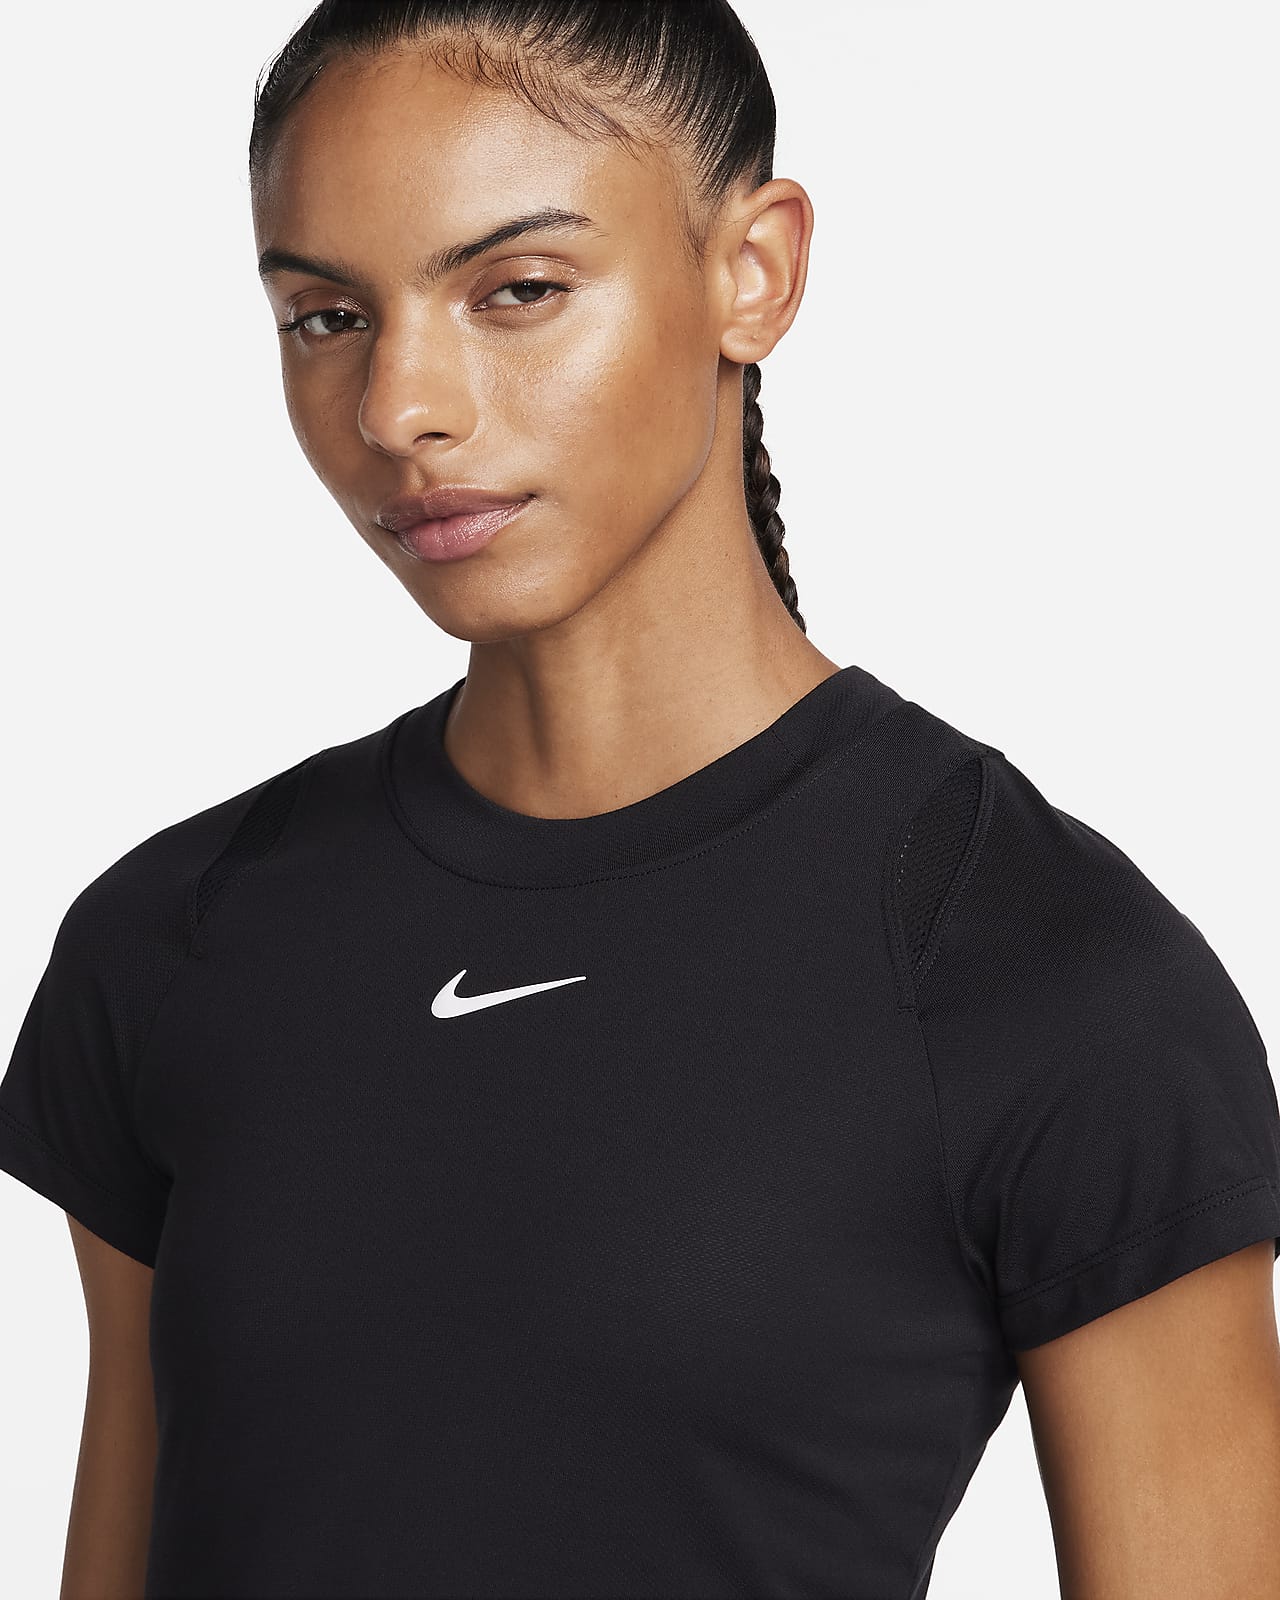 NikeCourt Advantage Women's Dri-FIT Tennis Tank Top